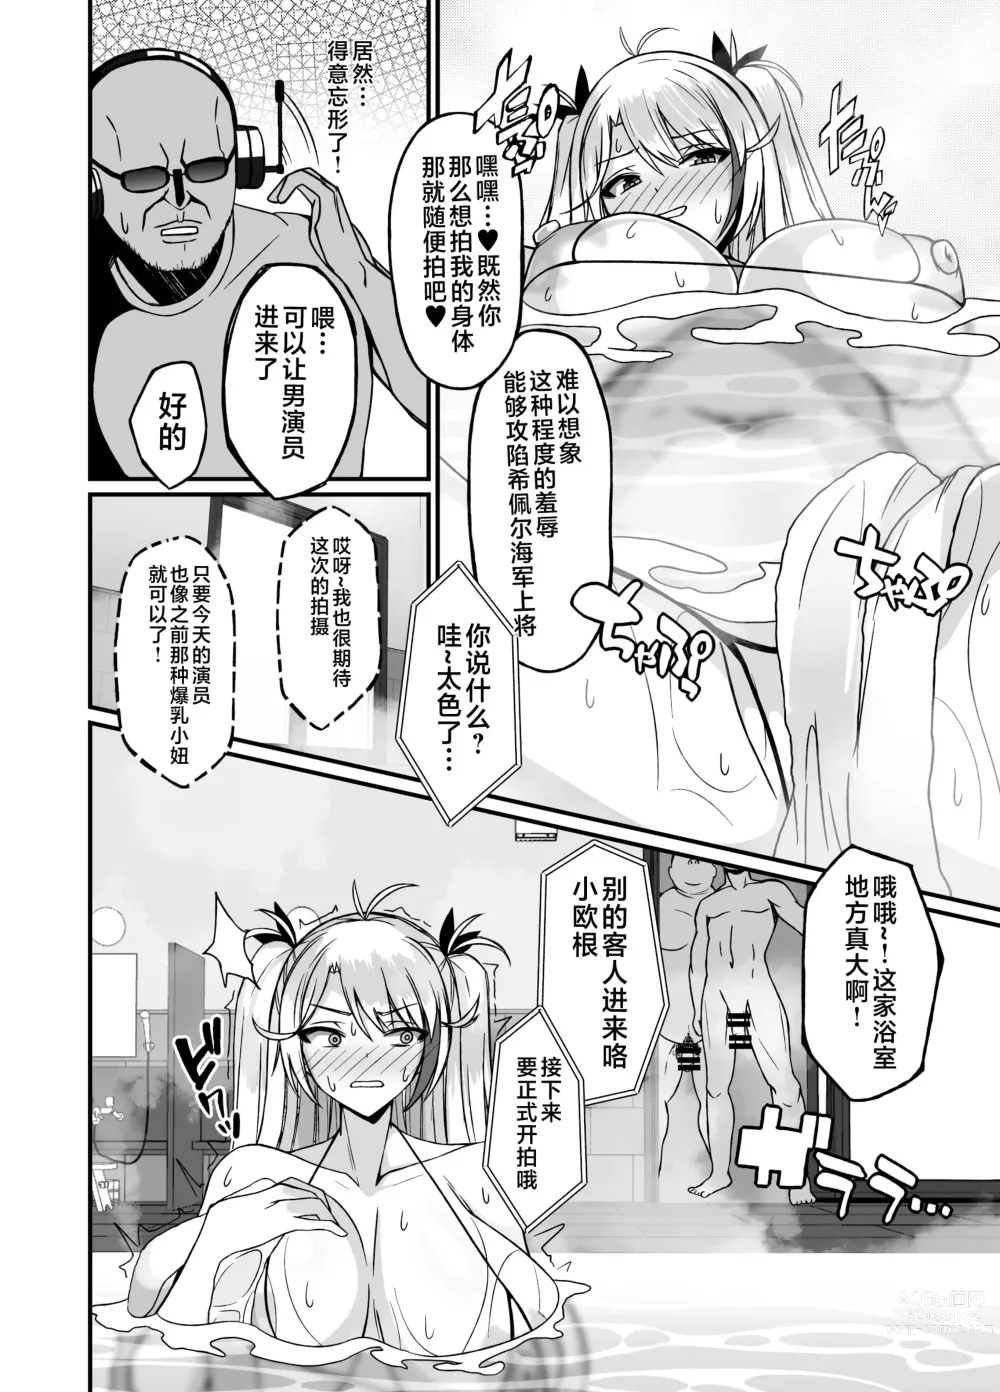 Page 6 of doujinshi Prinz Eugen Otokoyu Sennyuu Challenge